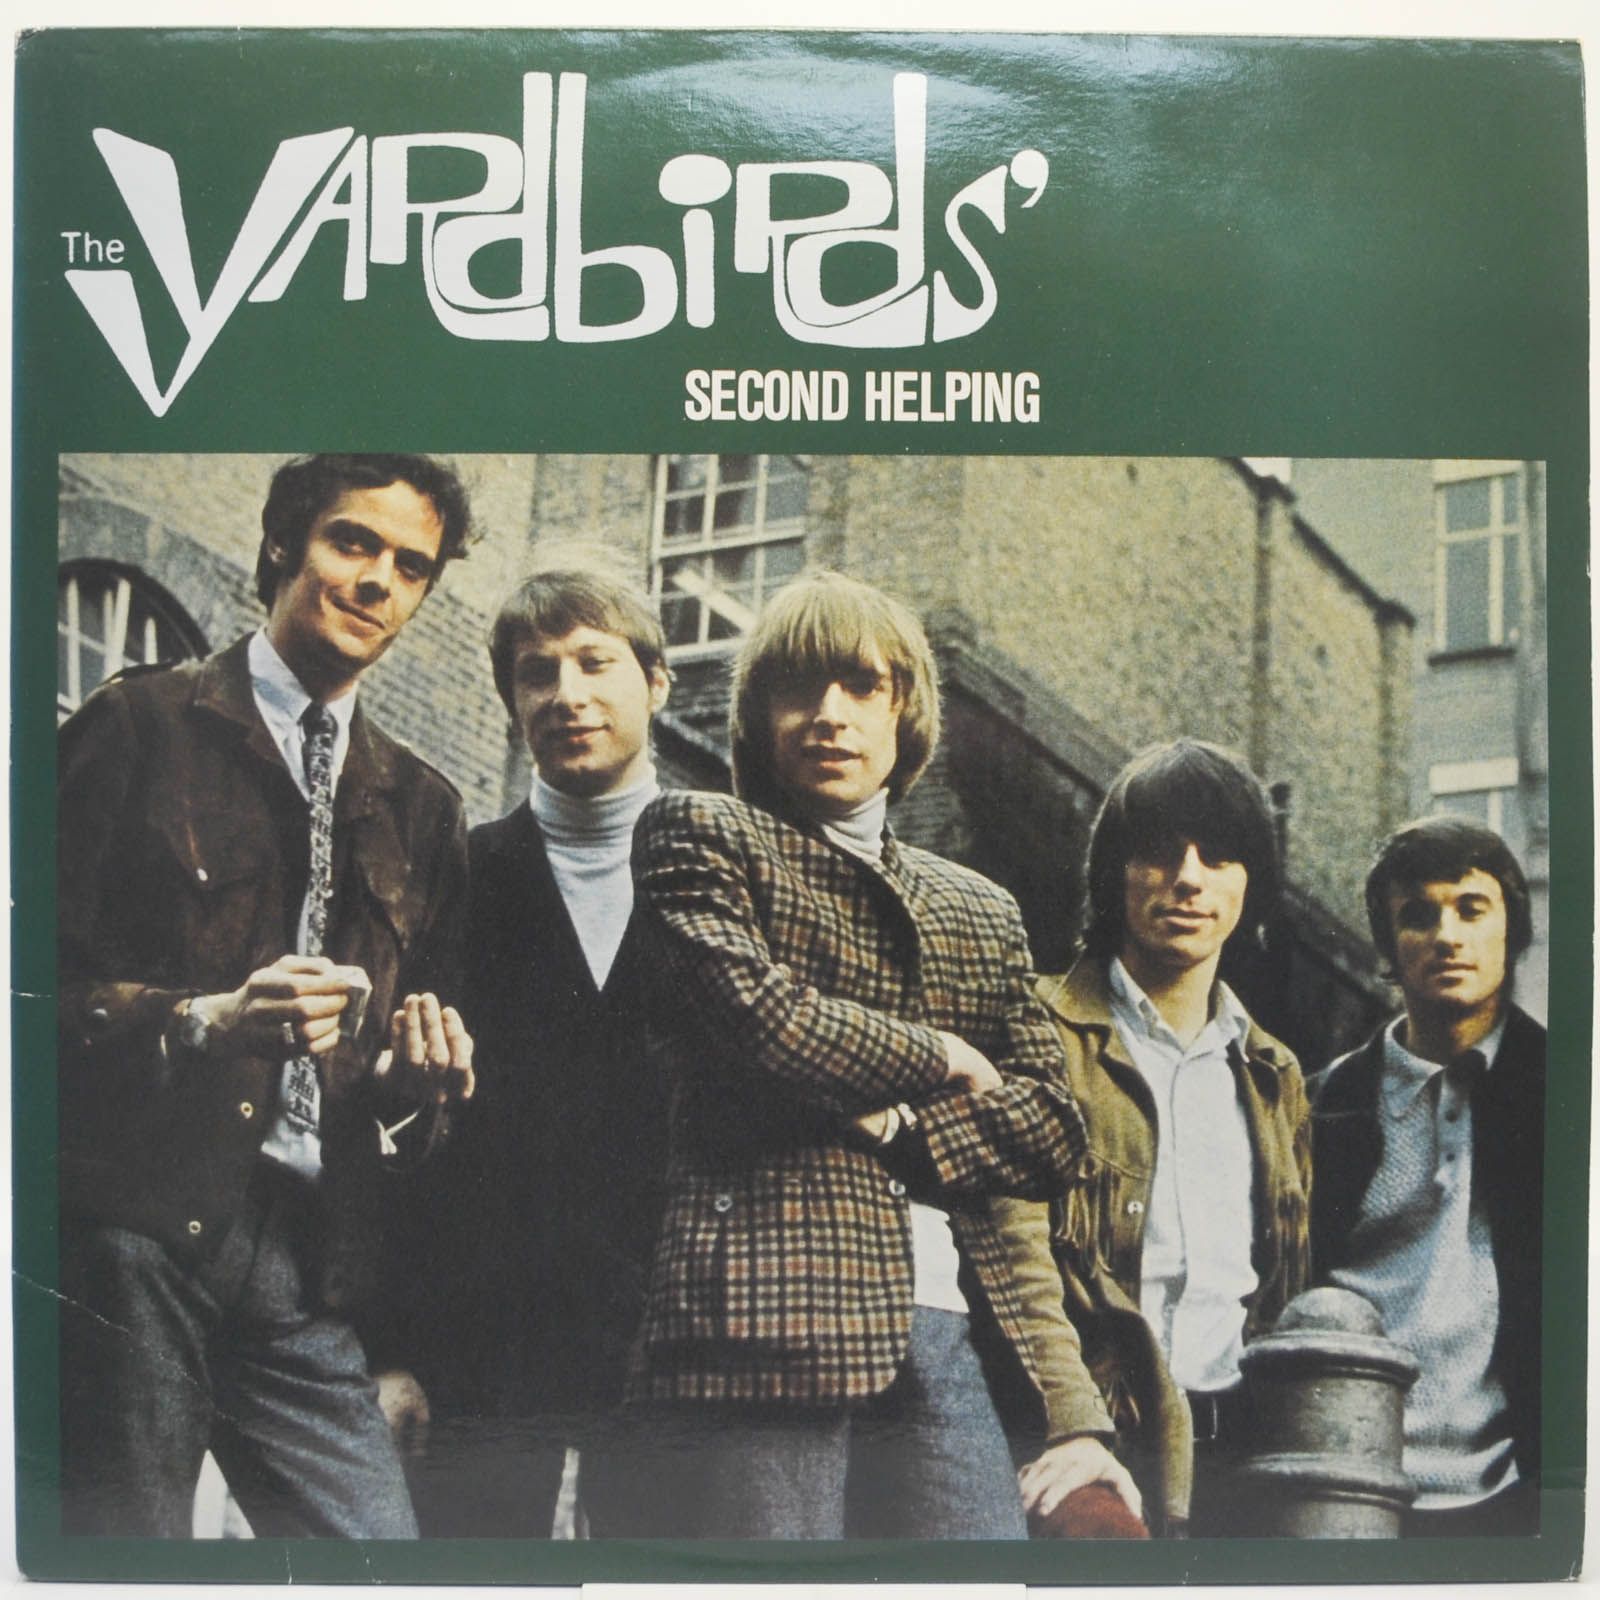 Yardbirds — Second Helping, 1982